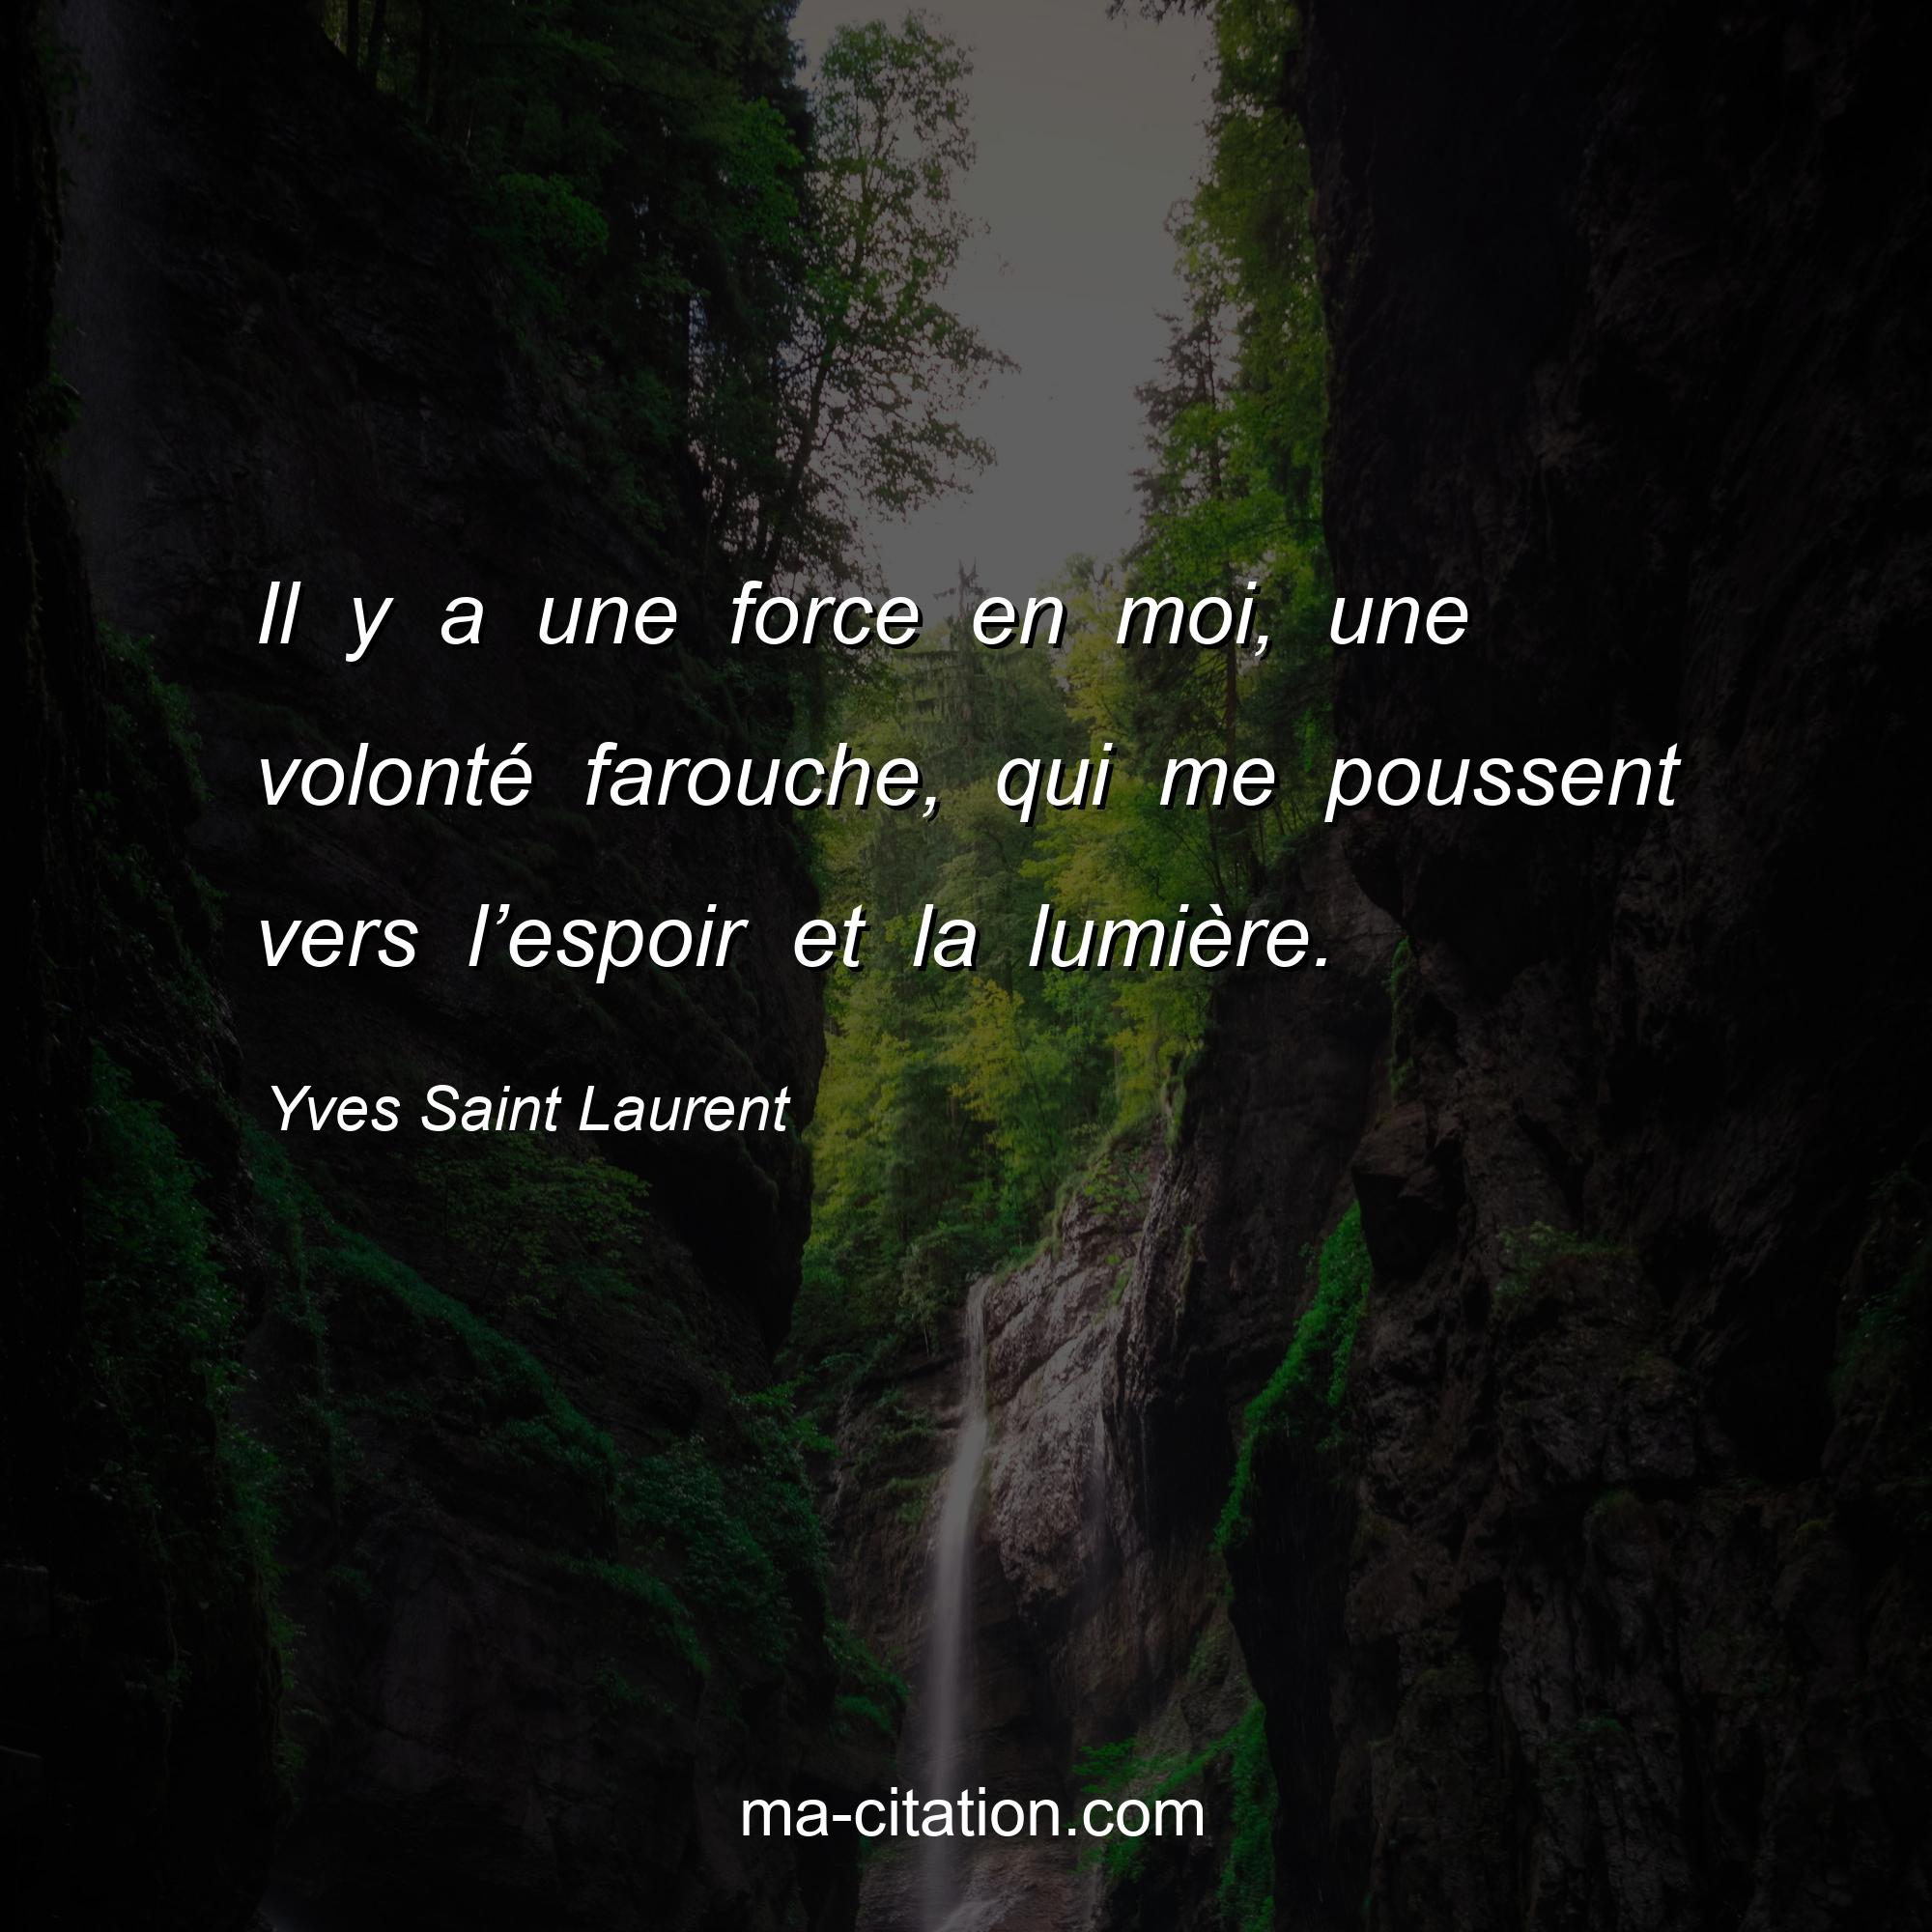 Yves Saint Laurent : Il y a une force en moi, une volonté farouche, qui me poussent vers l’espoir et la lumière.